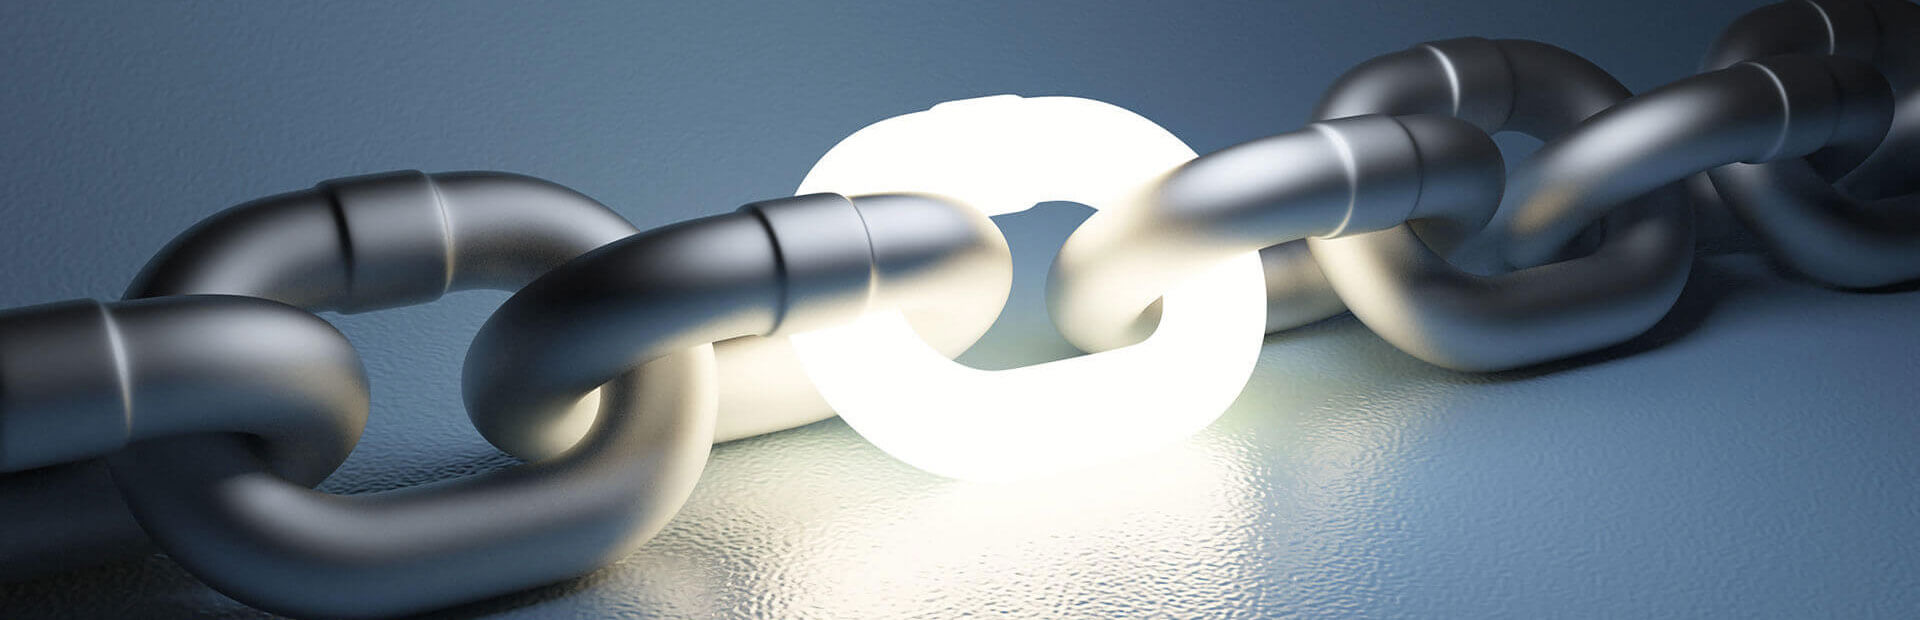 Een afbeelding van een ketting waar licht doorheen schijnt, wat de onderlinge verbondenheid van backlinks symboliseert.